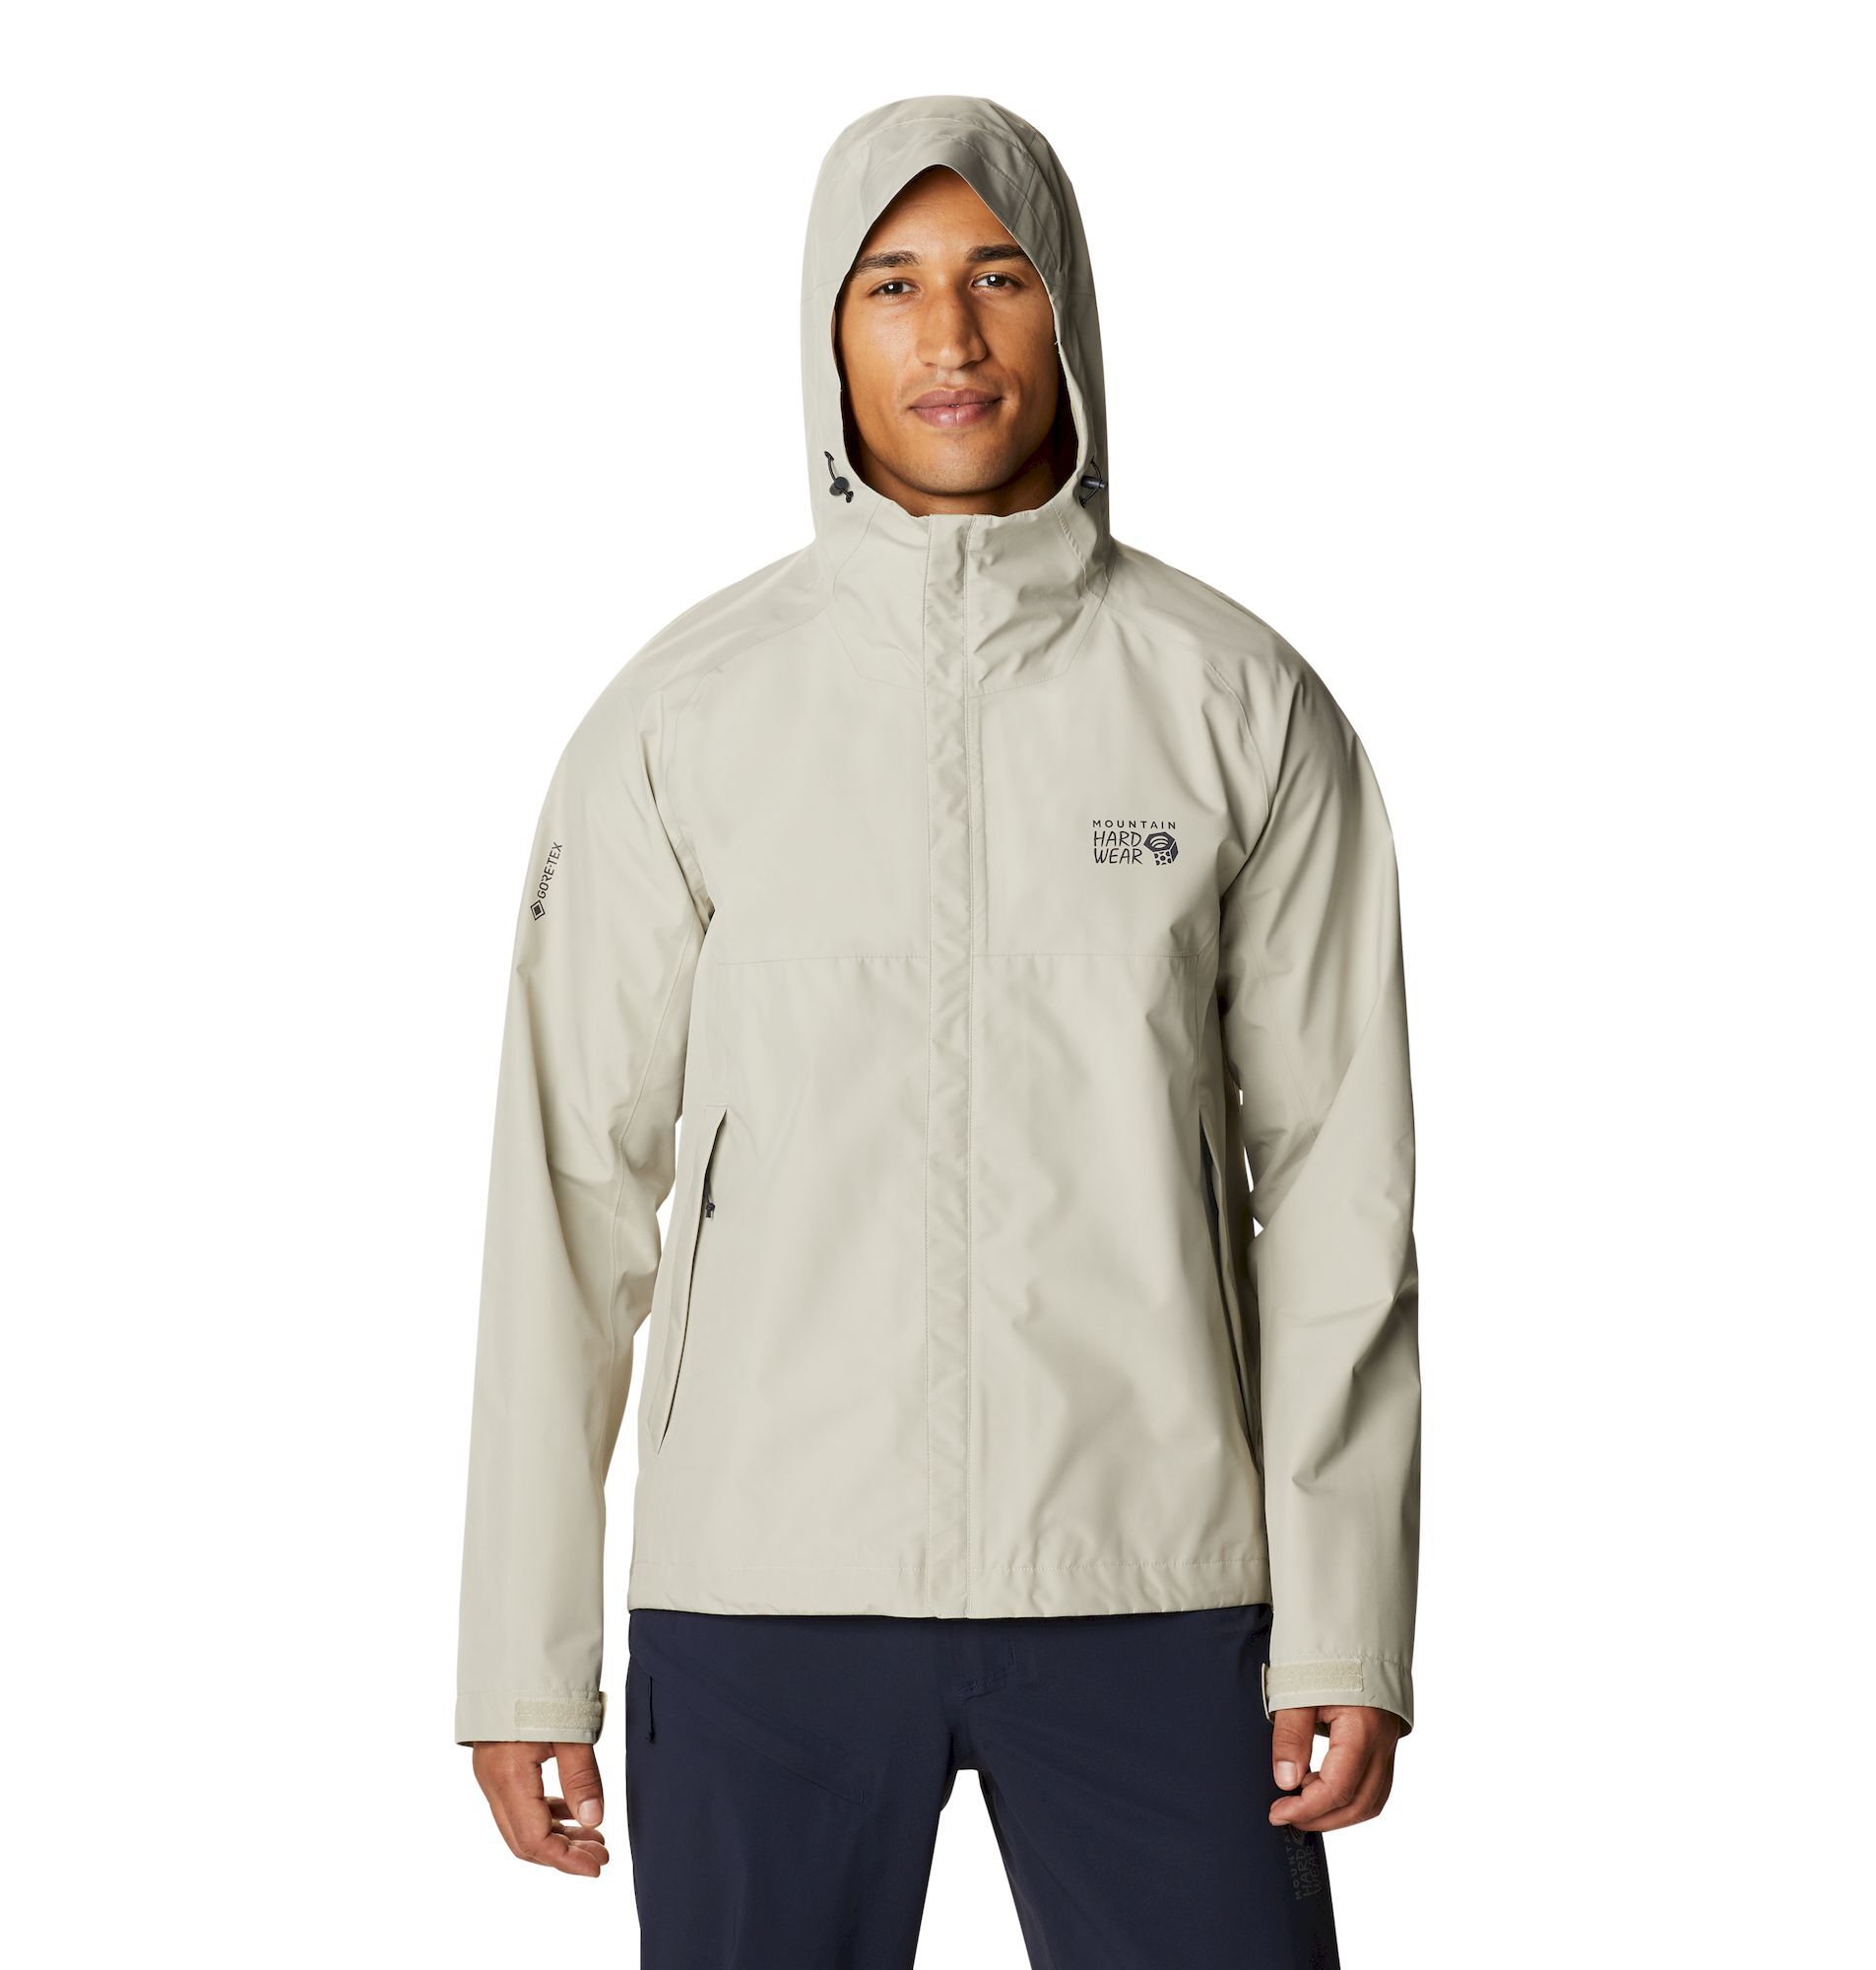 Mountain Hardwear Exposure/2 Paclite Jacket - Giacca antipioggia - Uomo